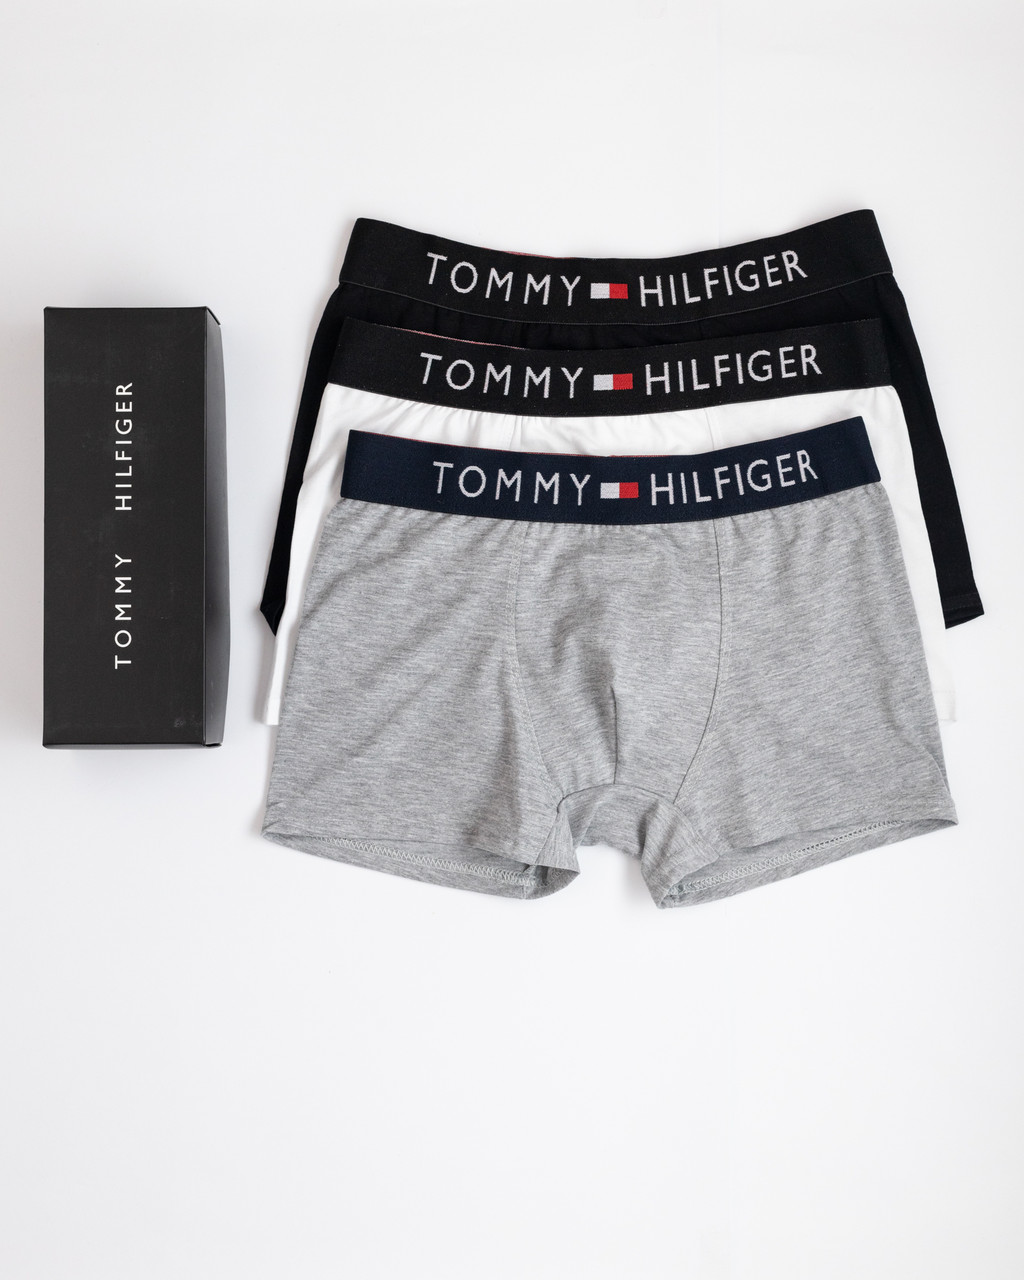 Подарунковий набір чоловічих трусів Tommy Hilfiger у фірмовому пакованні 3 штуки бавовна